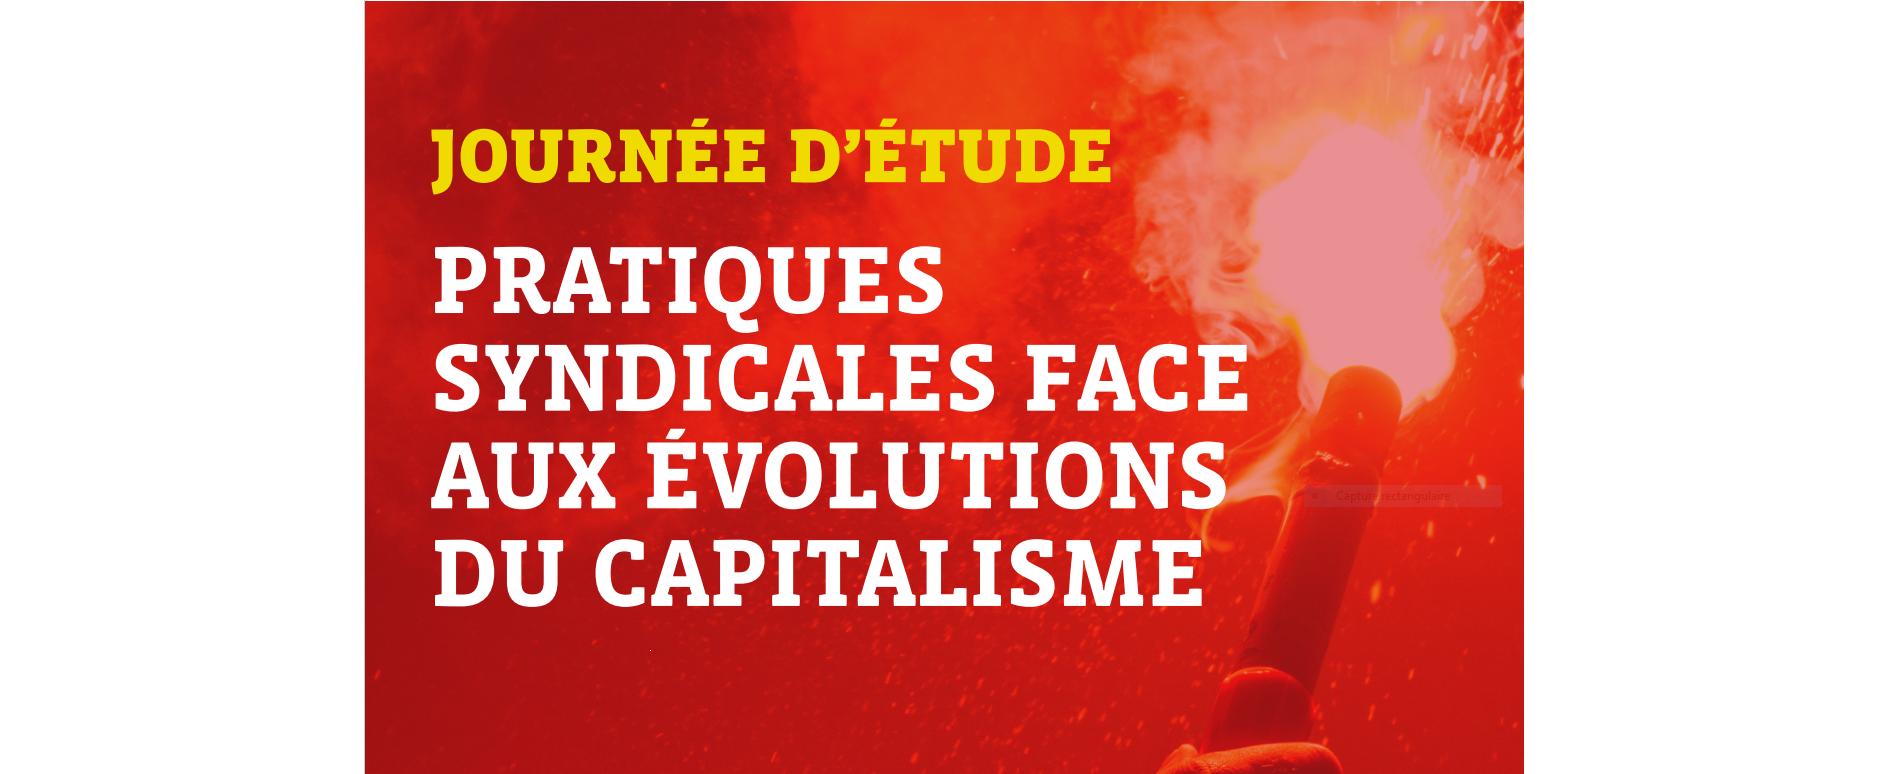 Pratiques syndicales face aux évolutions du capitalisme, 14 octobre 2022, 9h30-16h30